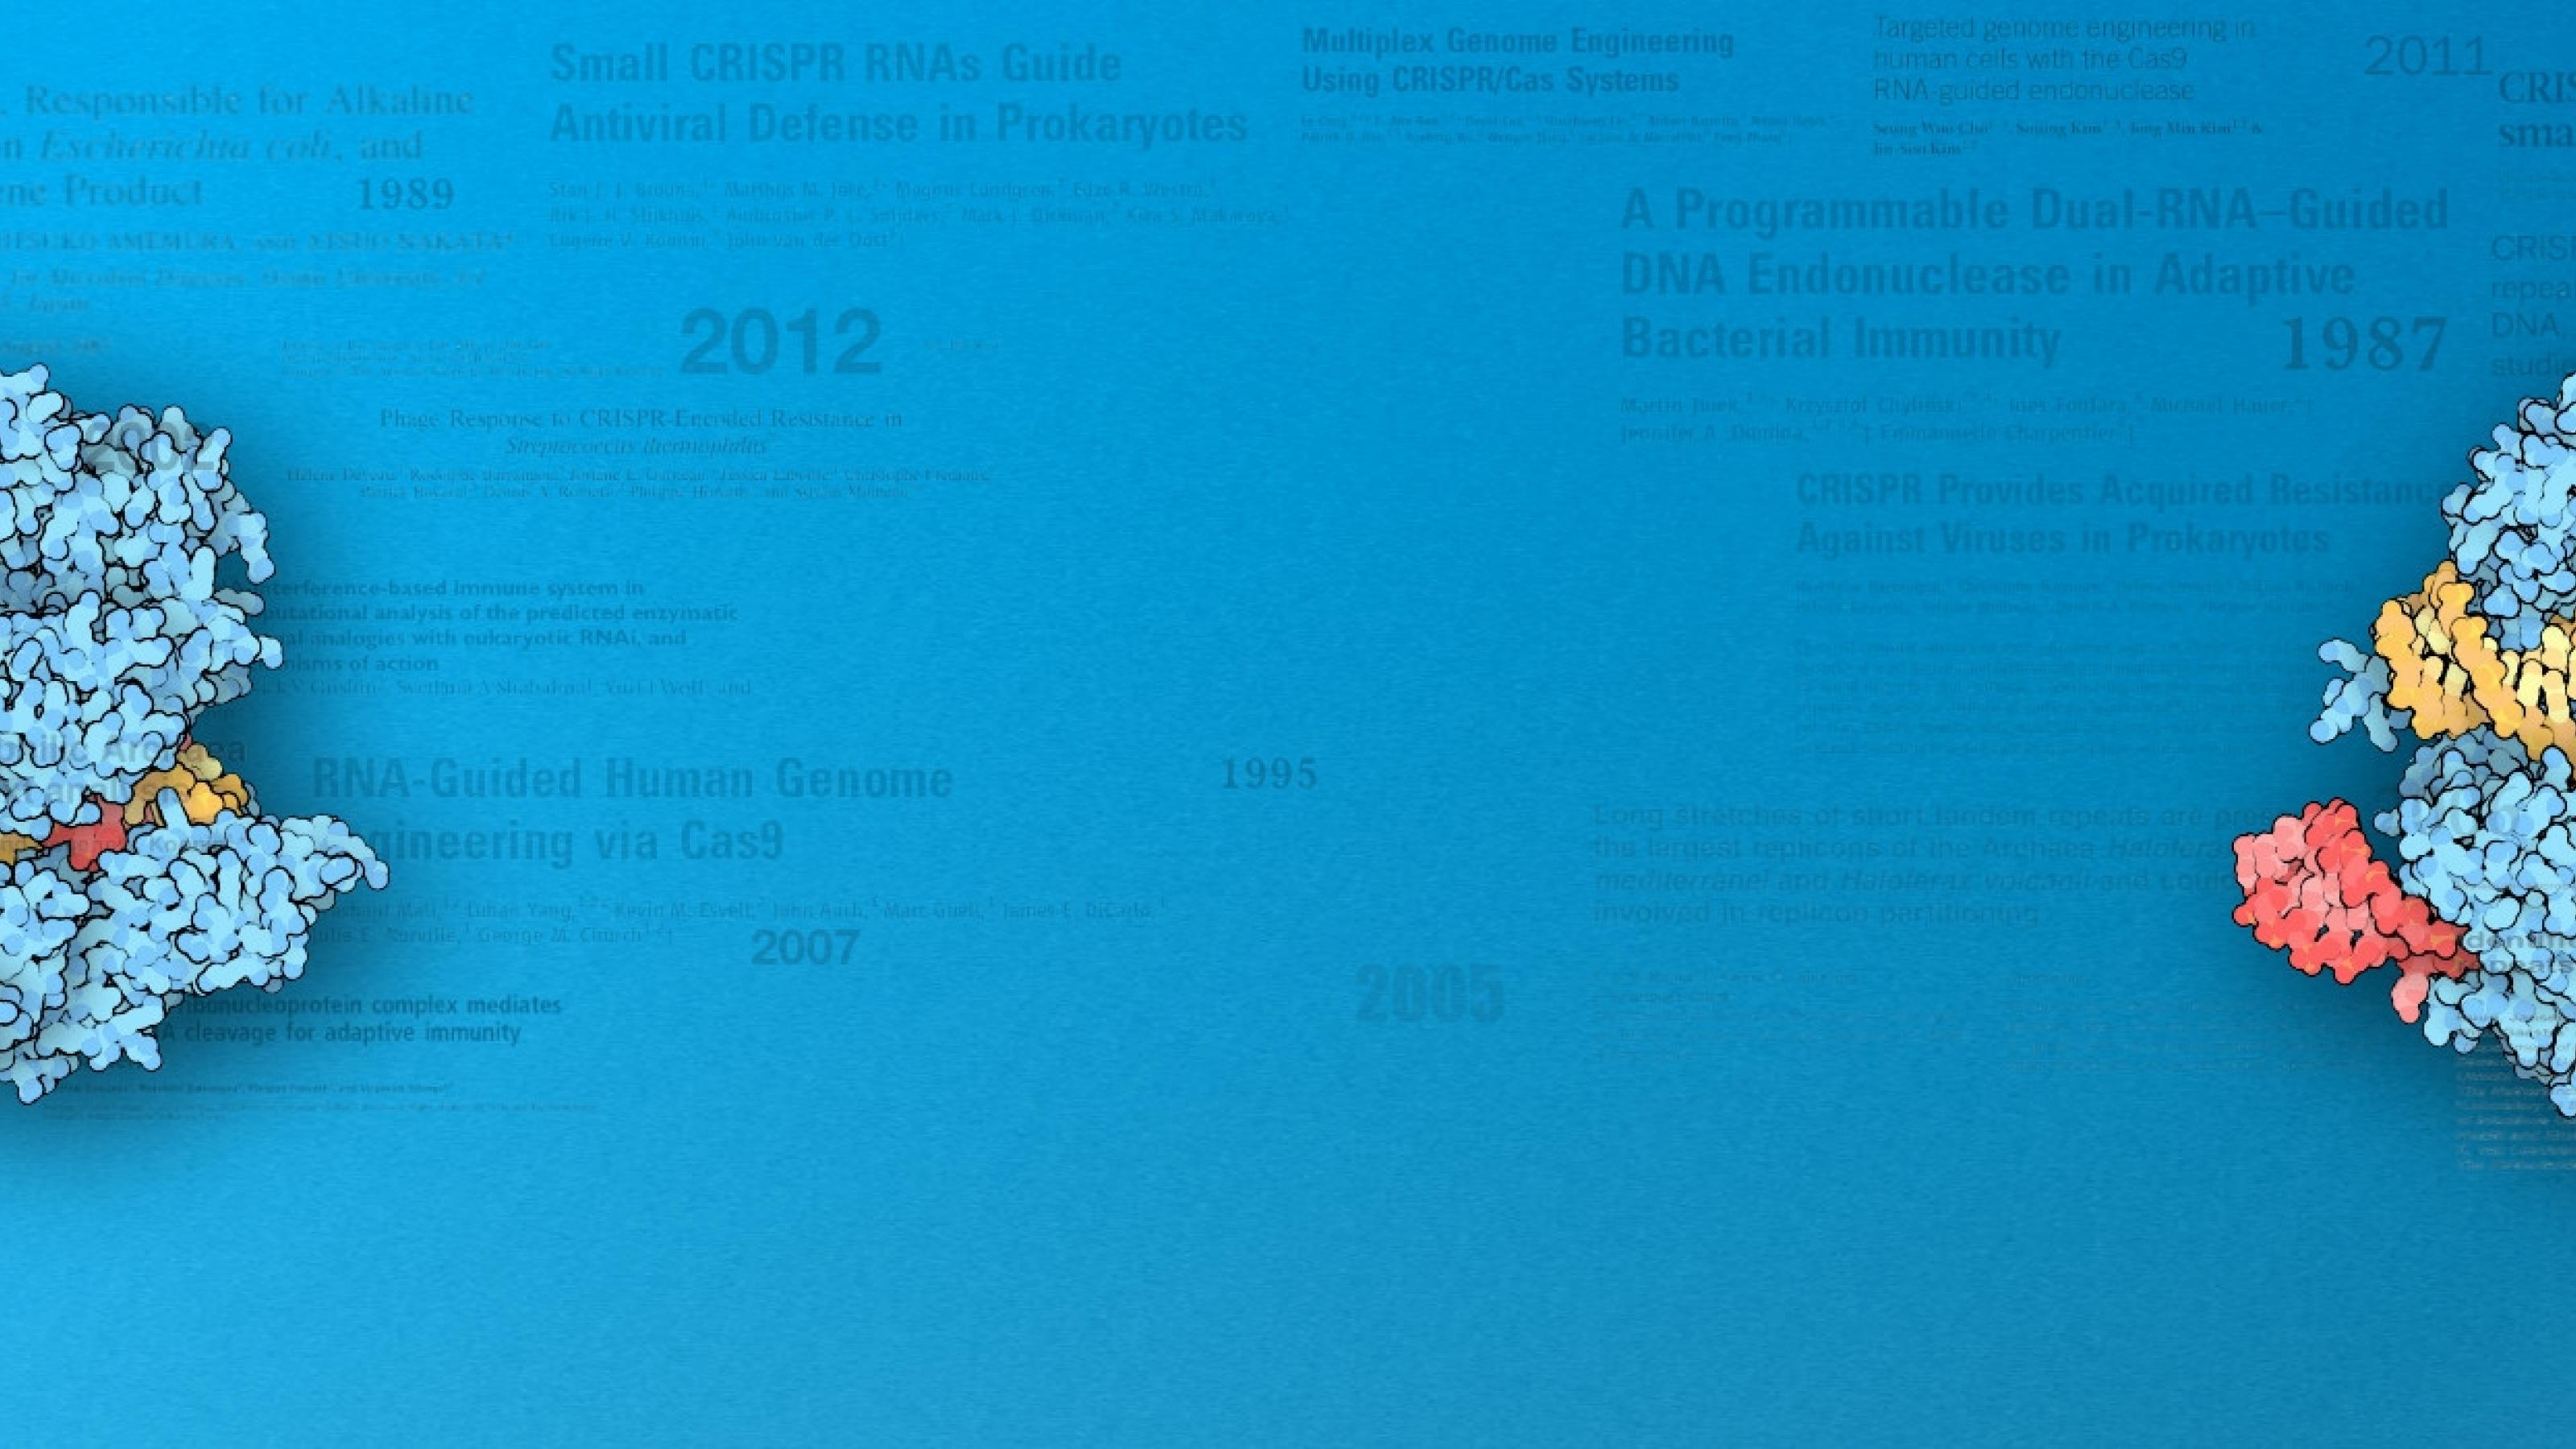 Zwei Grafiken des Cas9-Proteins schweben rechts und links der Mitte vor blauem Hintergrund und wichtigen Titeln und Jahreszahlen der CRISPR-Historie.